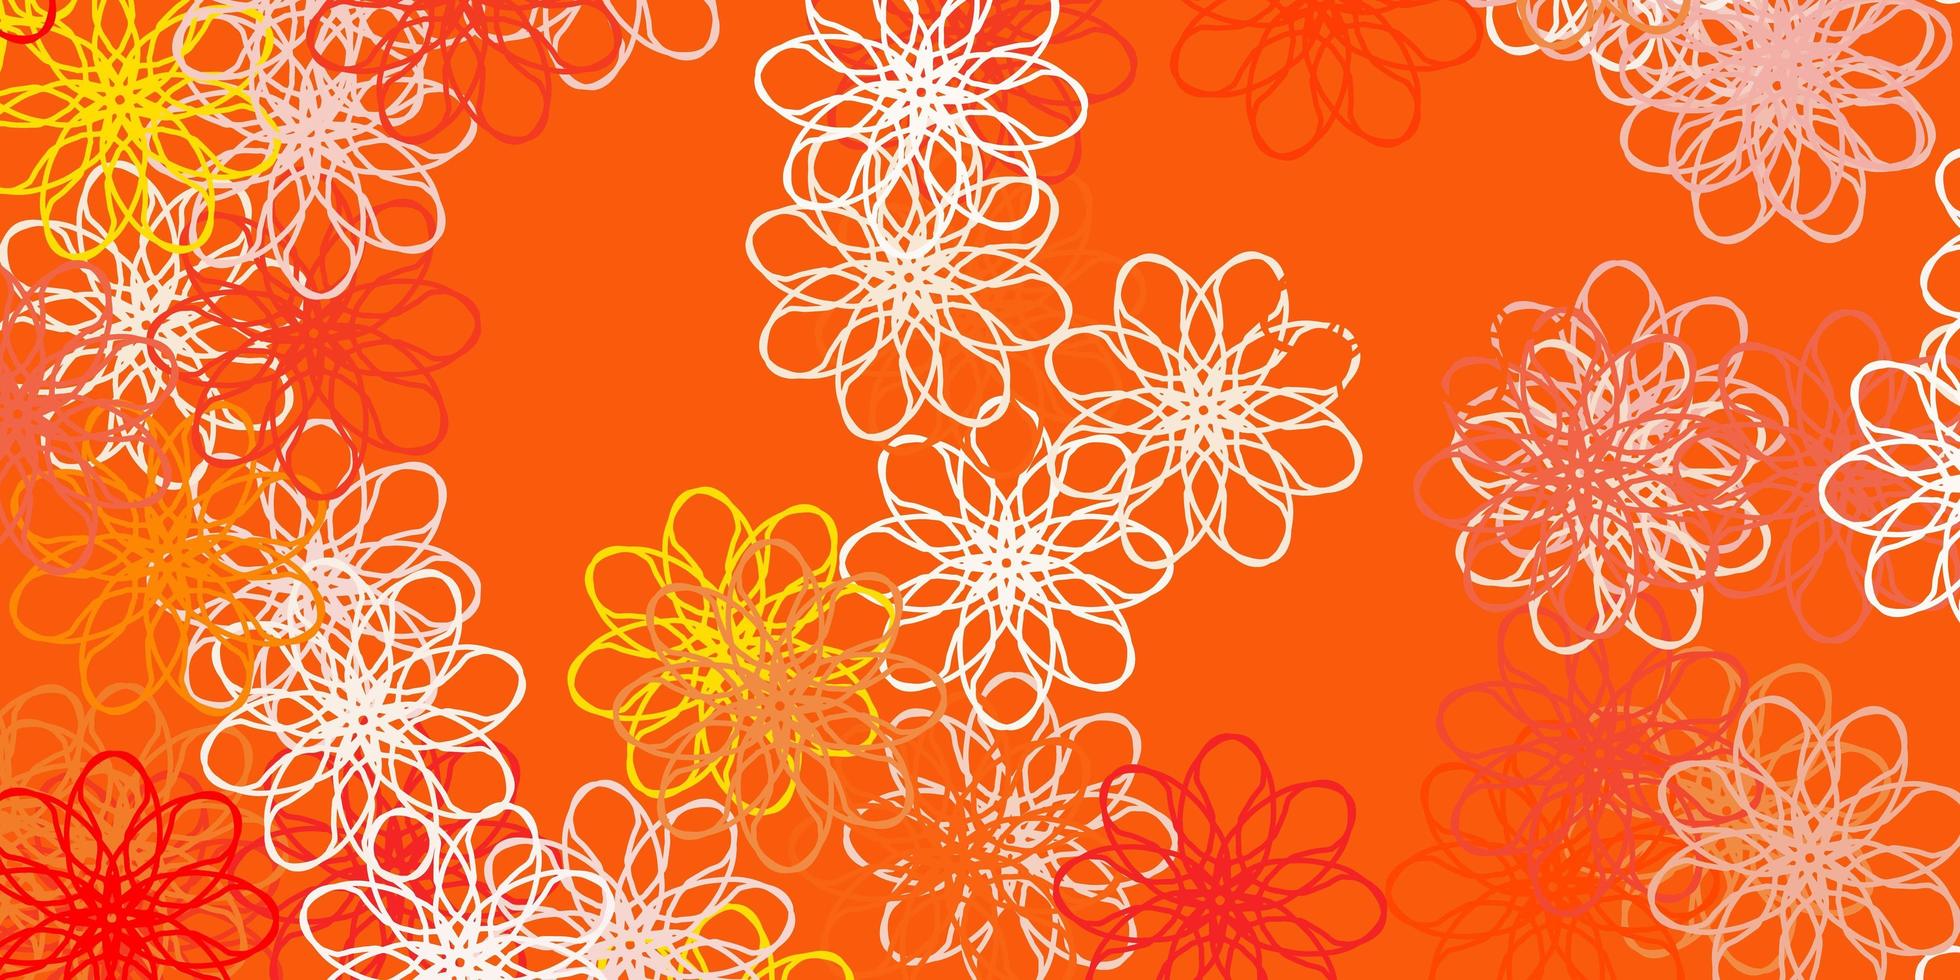 lichtoranje vector doodle textuur met bloemen.